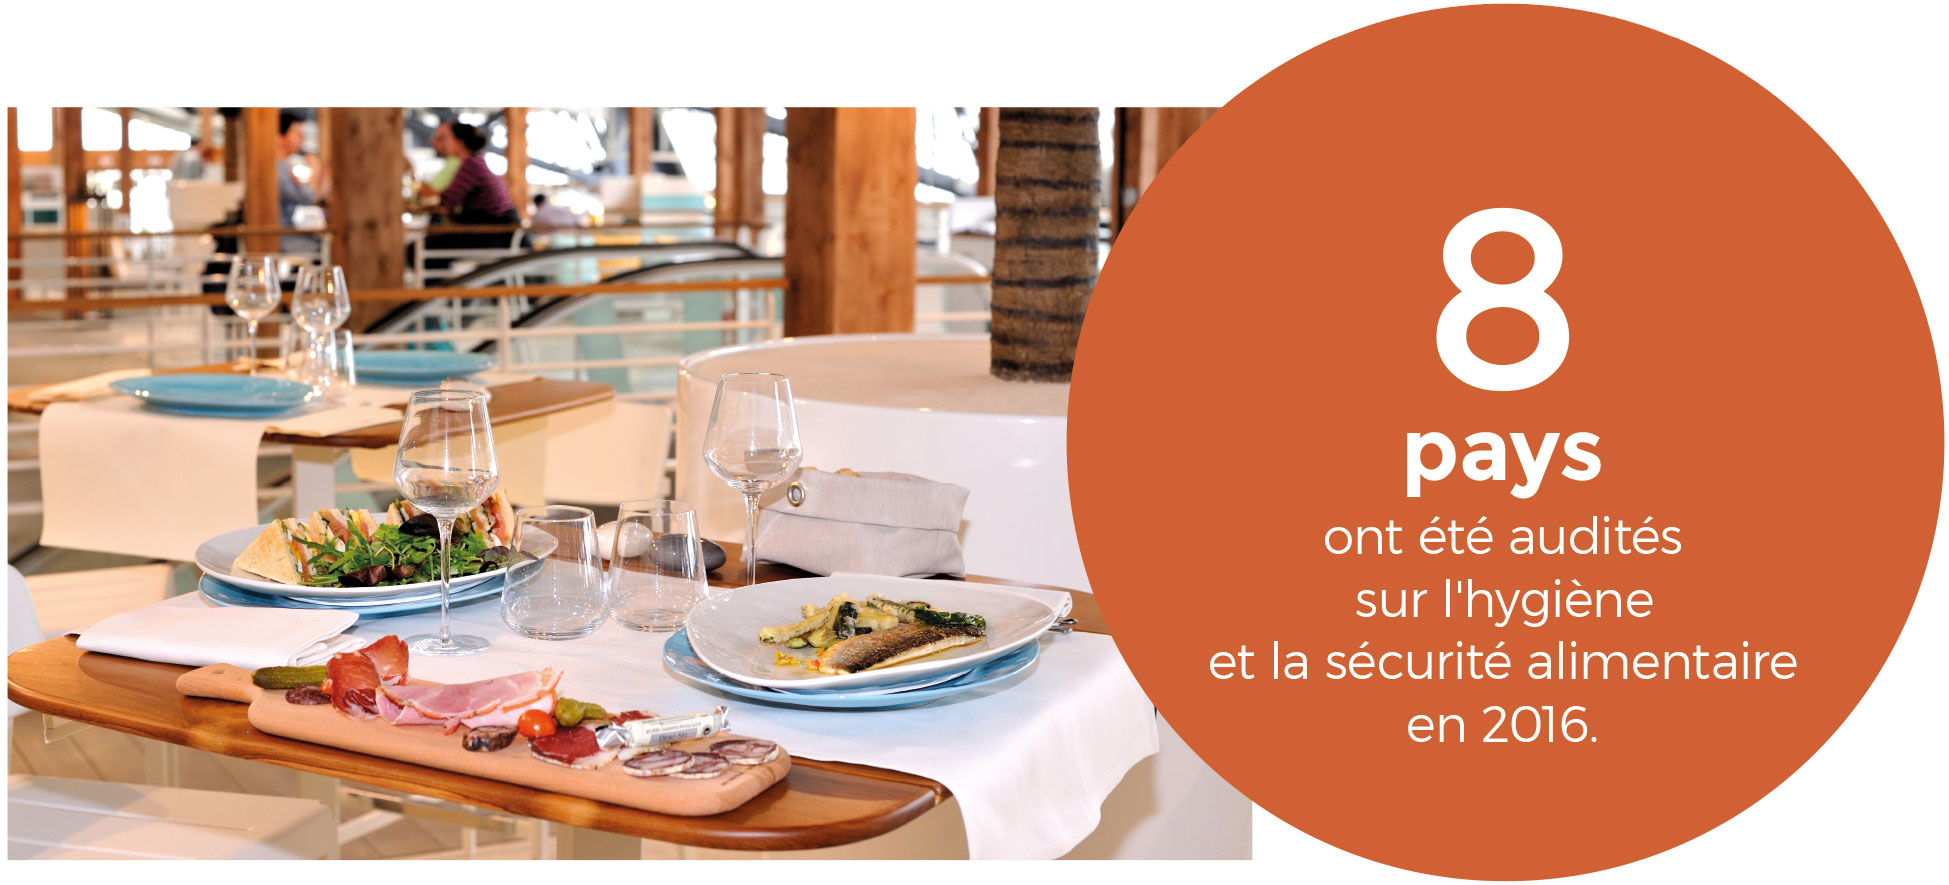 Restaurant La Plage, concept imaginé par Lagardère Travel Retail en partenariat avec le chef étoilé Thierry Marx, à l’aéroport Nice–Côte d’Azur (France)